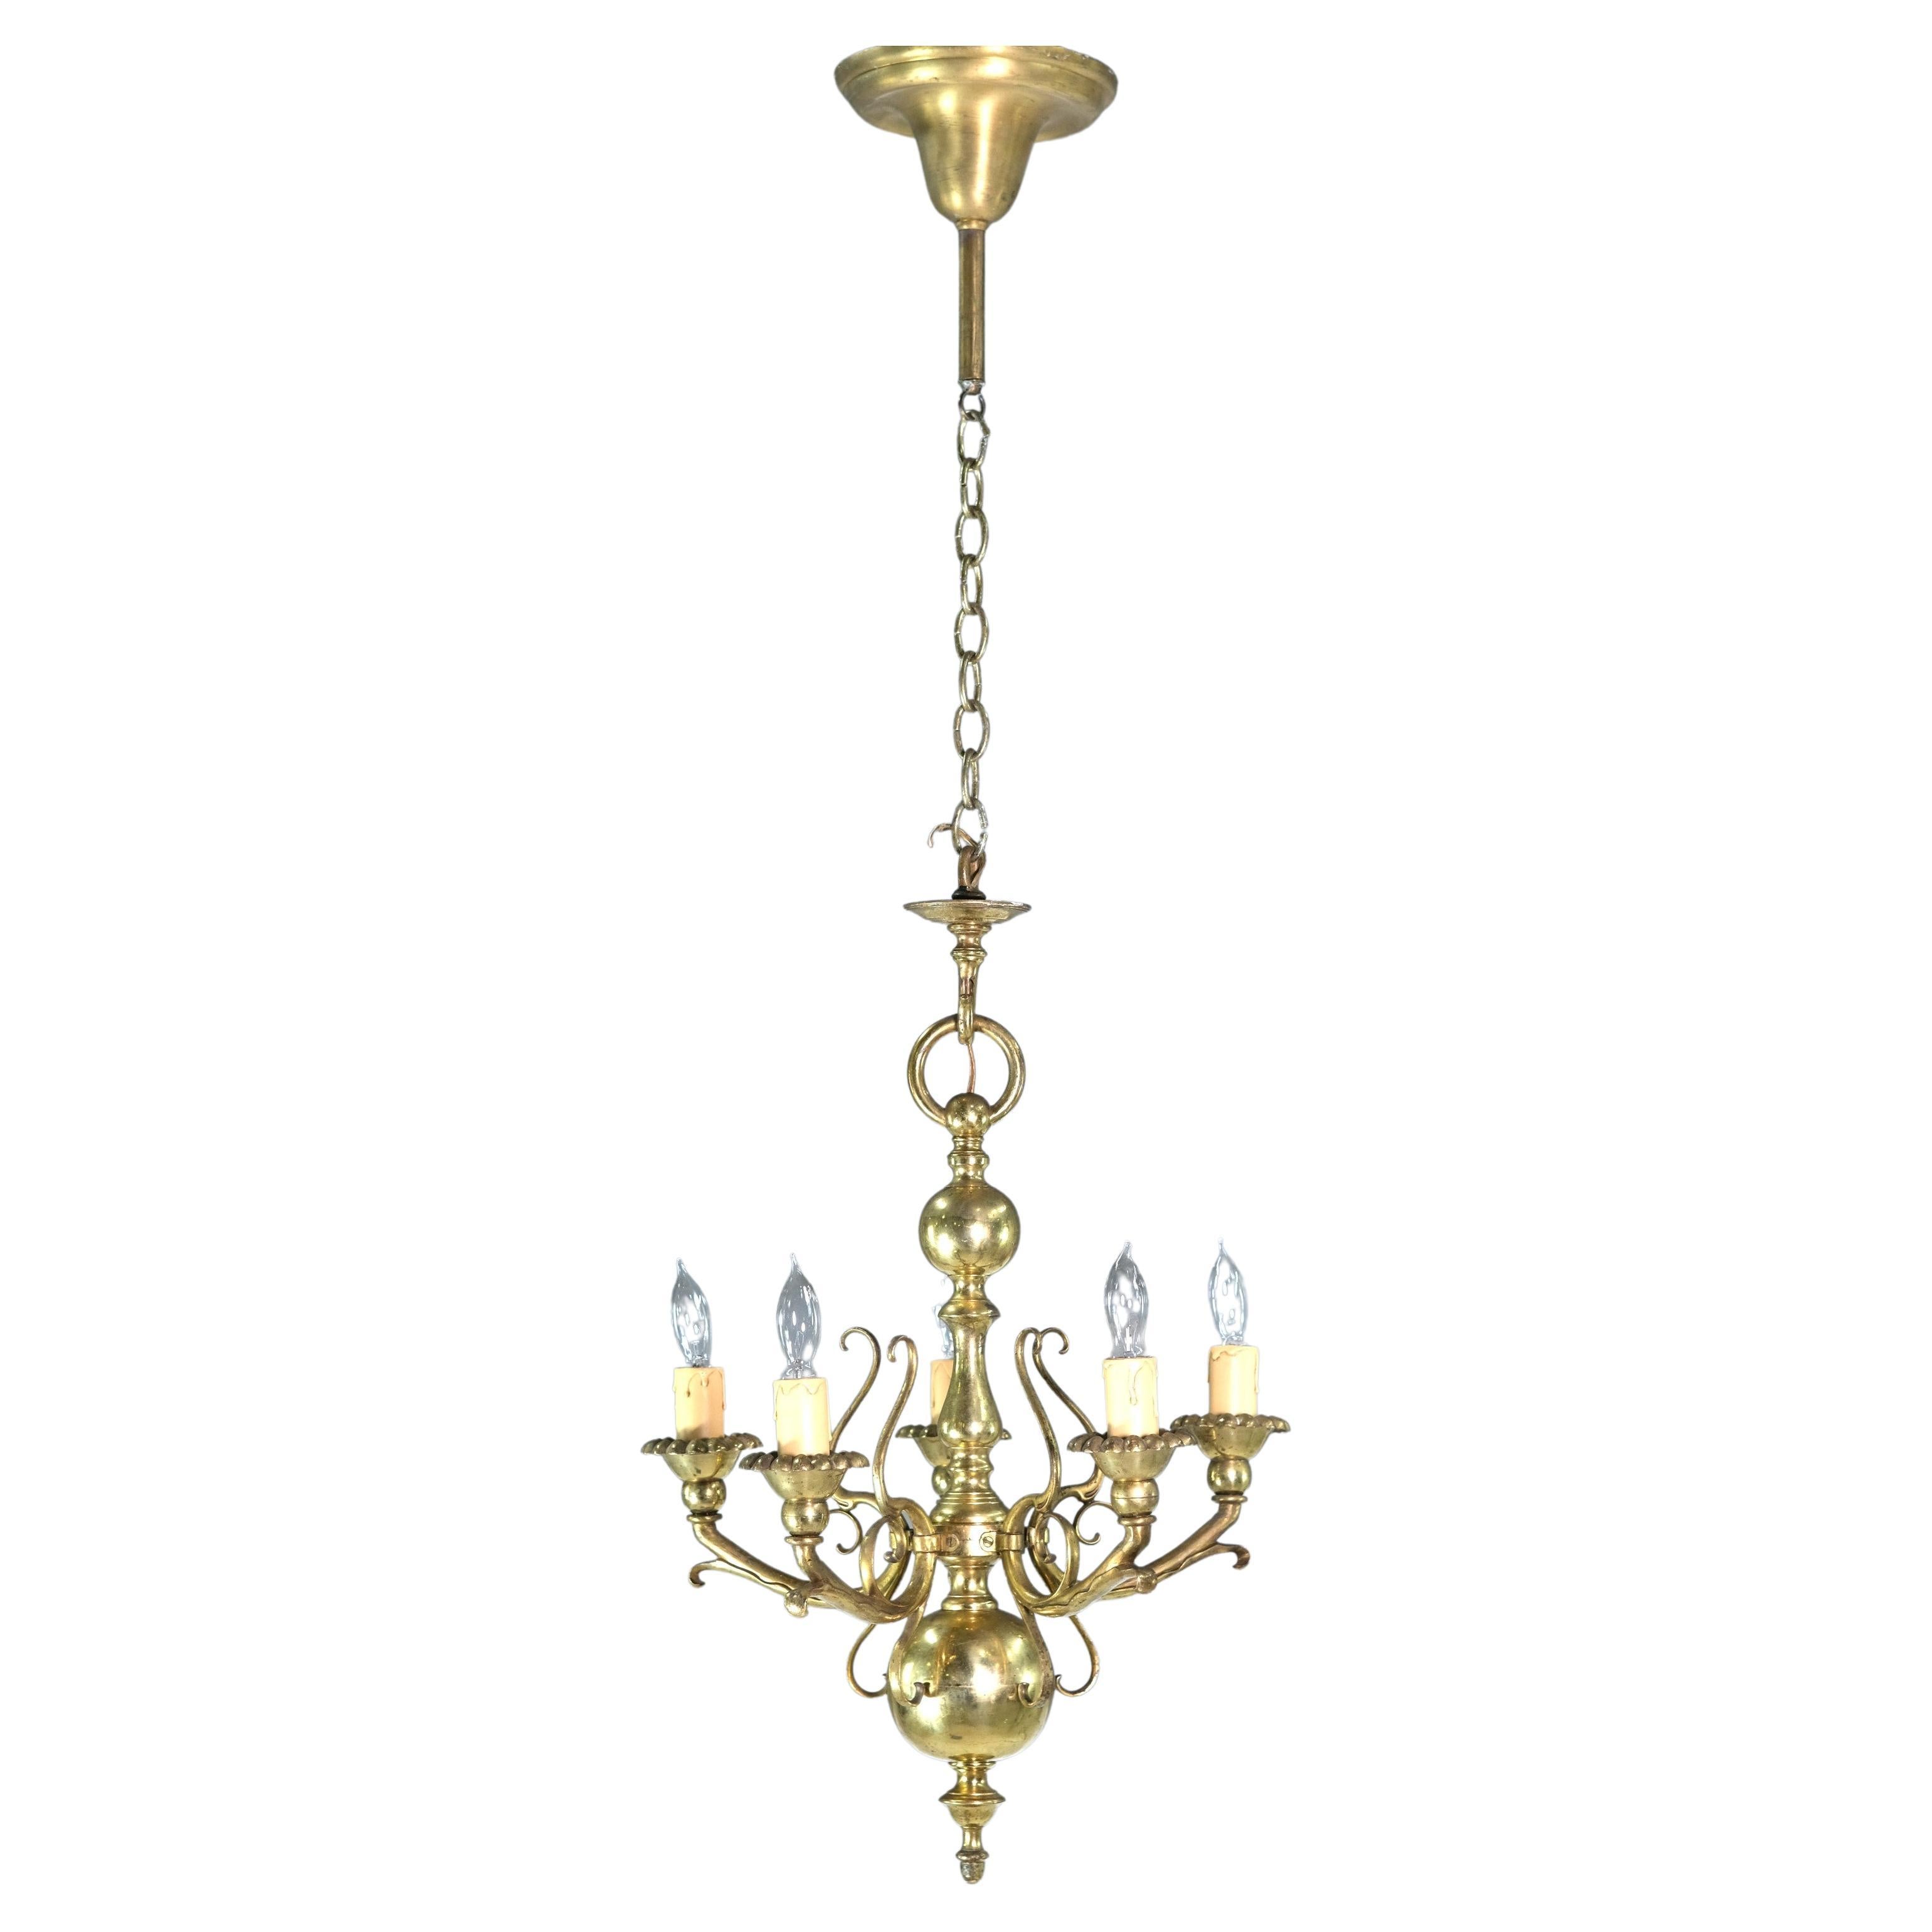 Baroque Solid Brass 5 Light Chandelier Florals Swirls Design For Sale